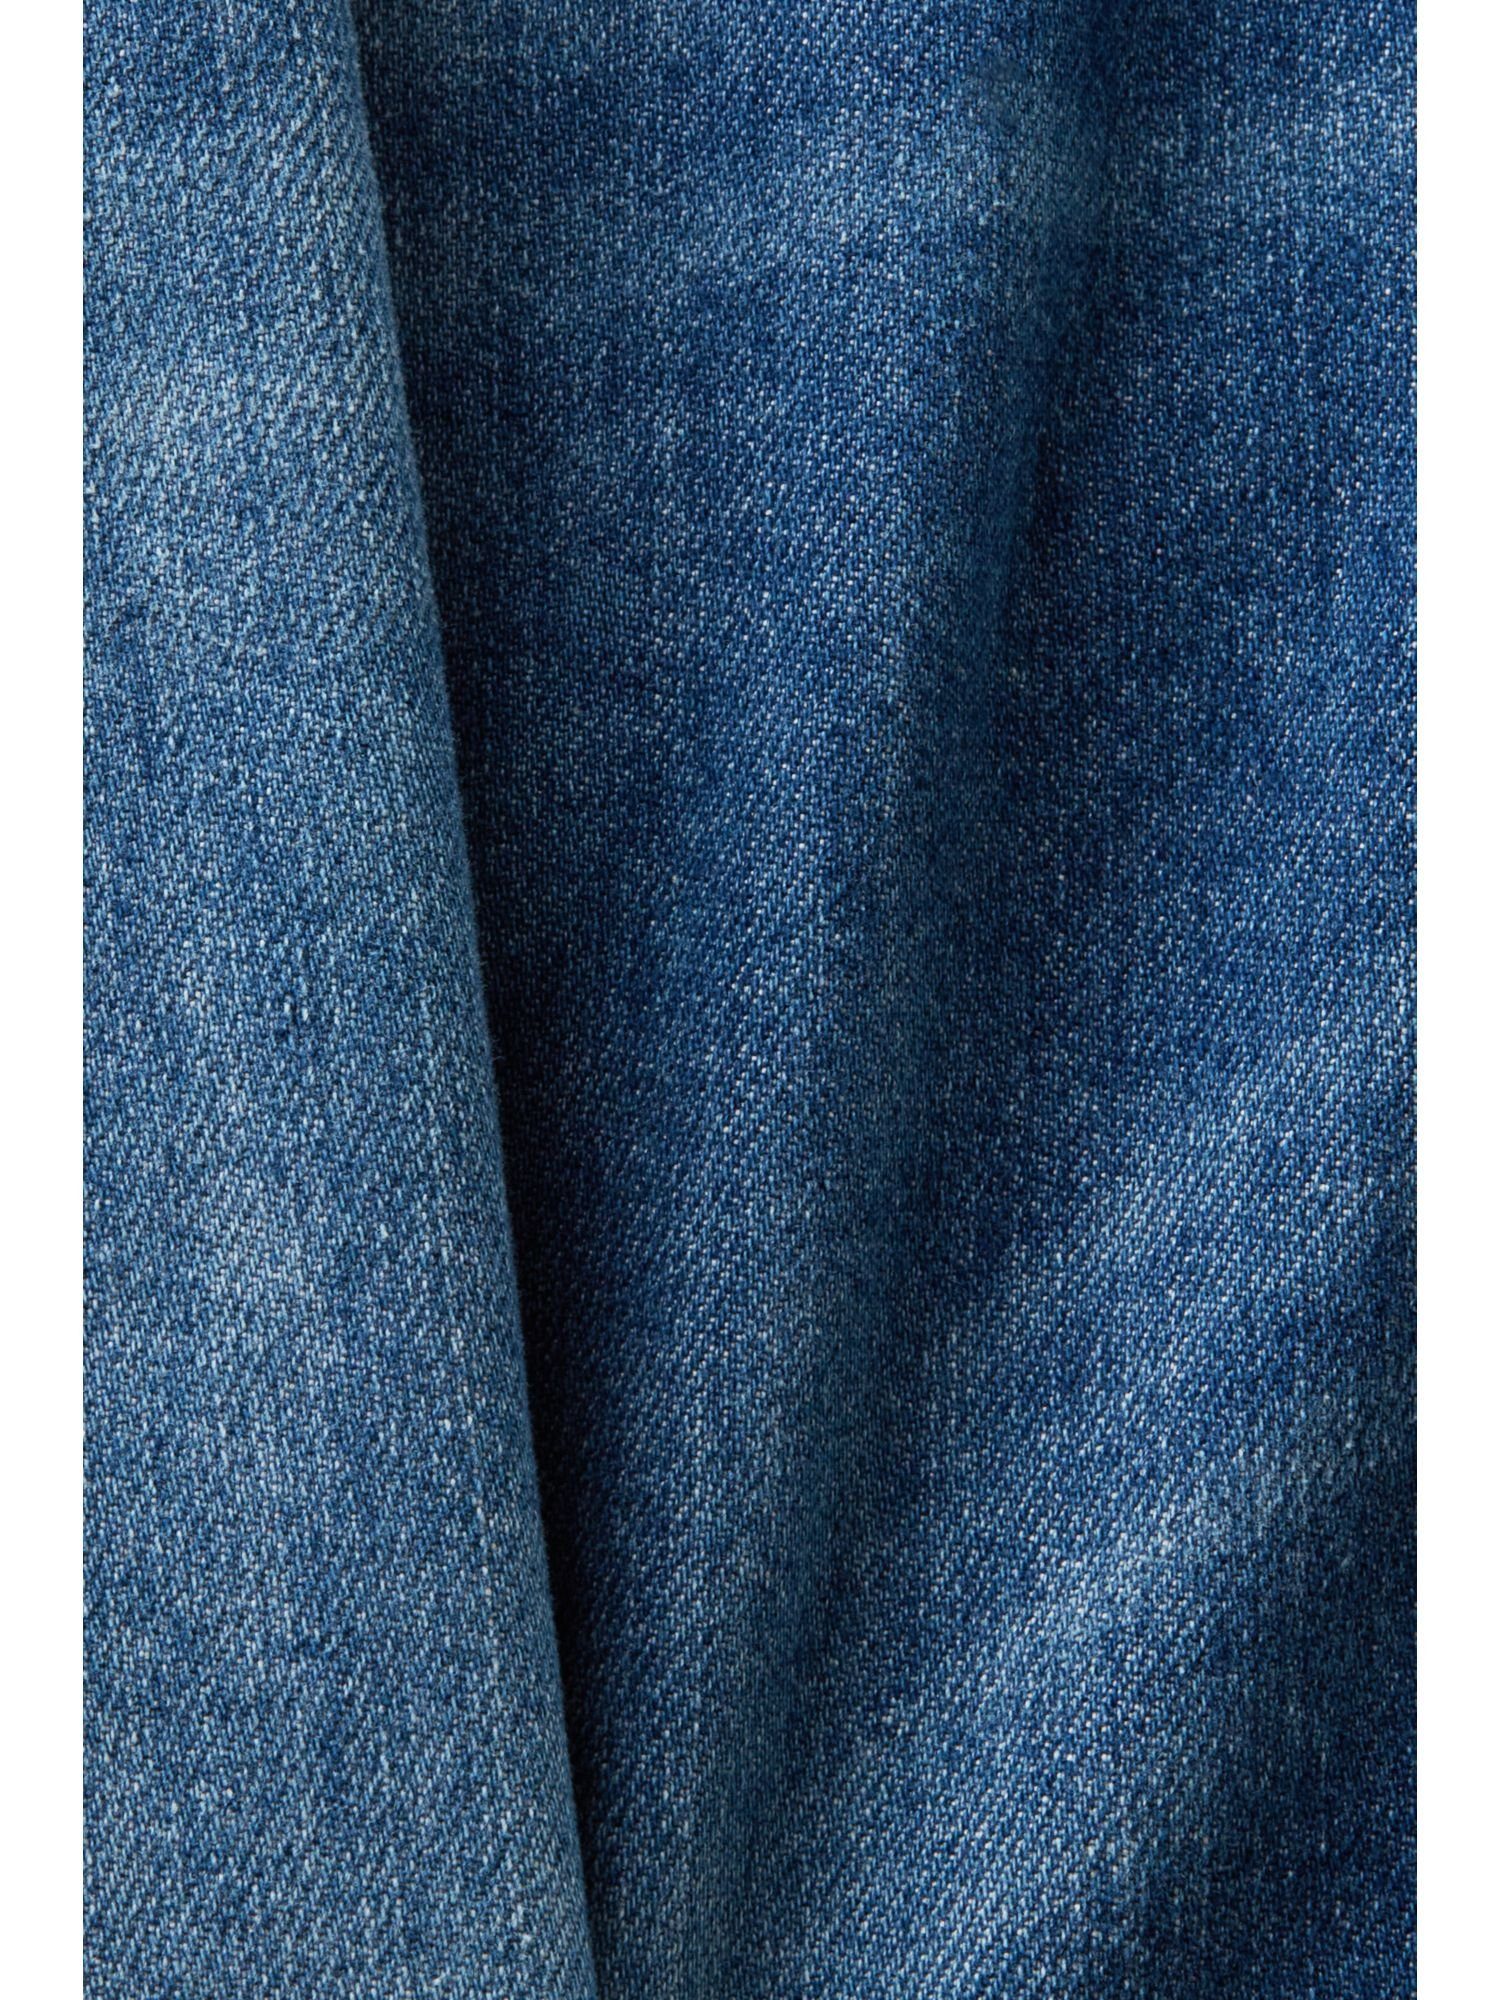 Schmale Esprit mittlerer Jeans Bundhöhe Slim-fit-Jeans mit